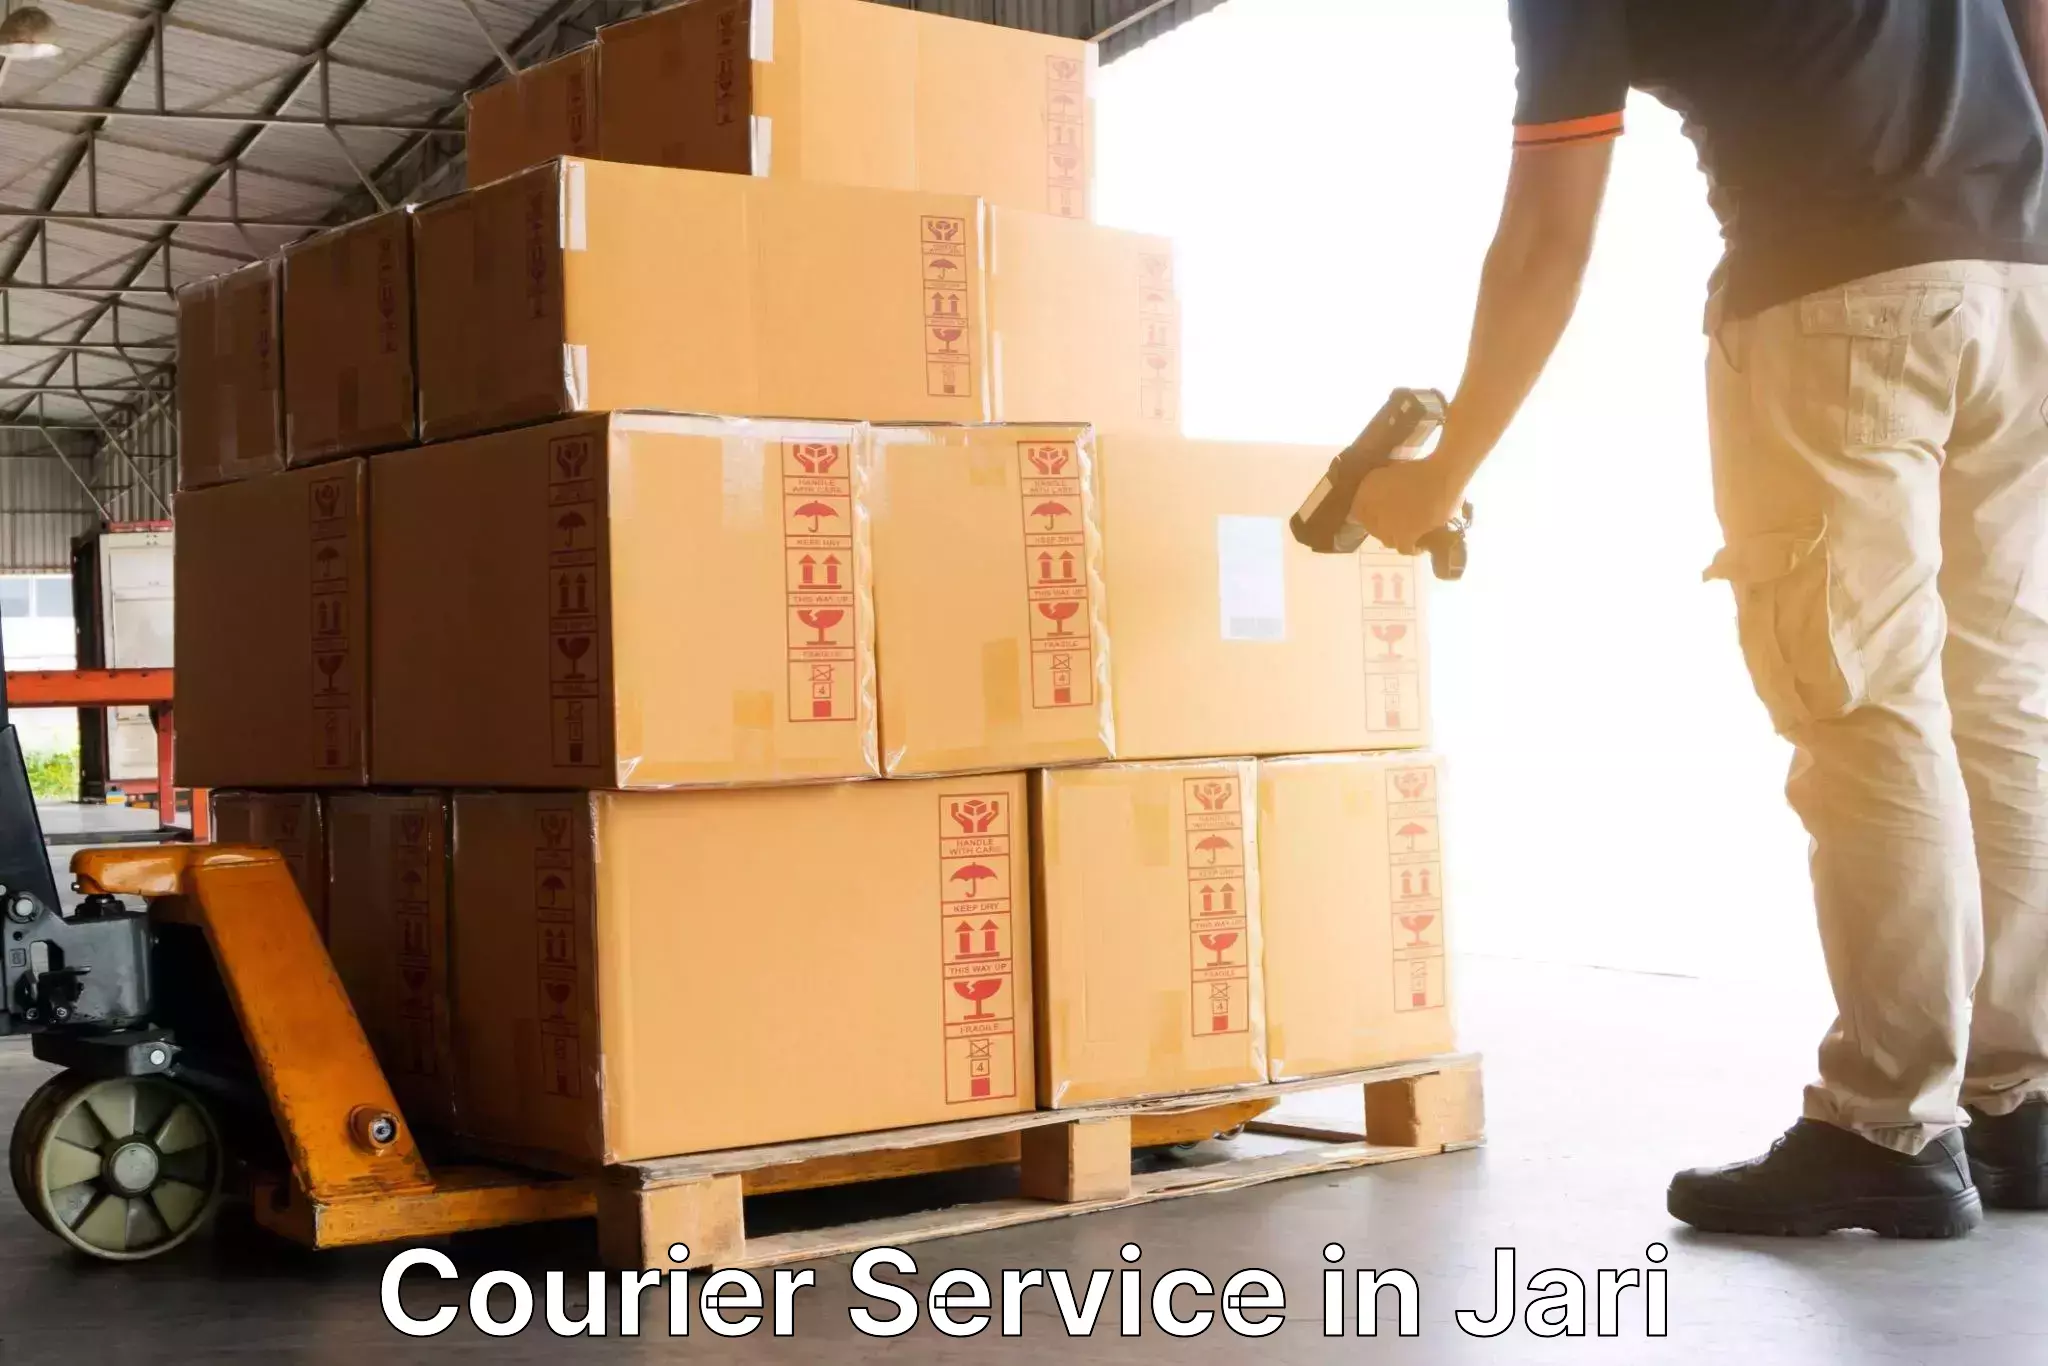 Courier service comparison in Jari